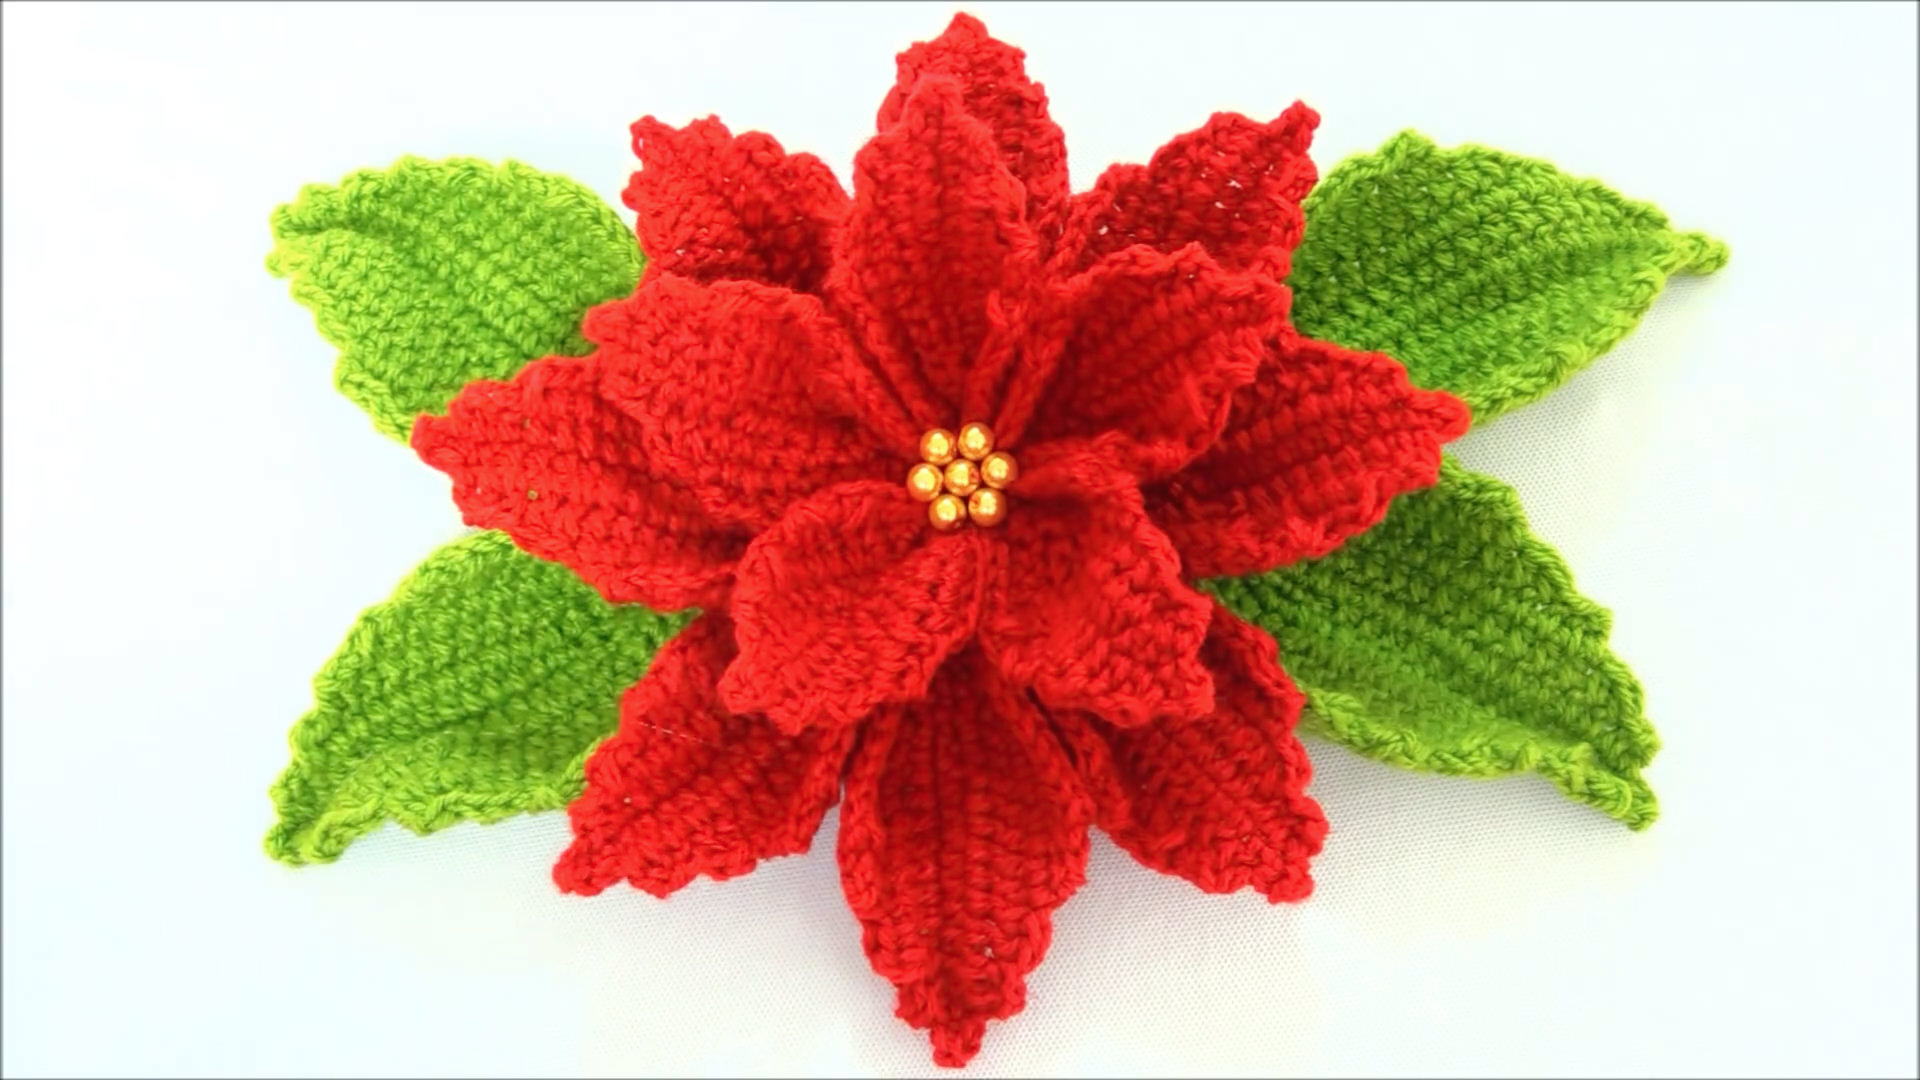 Crochet Poinsettia Flower To Make For Decor